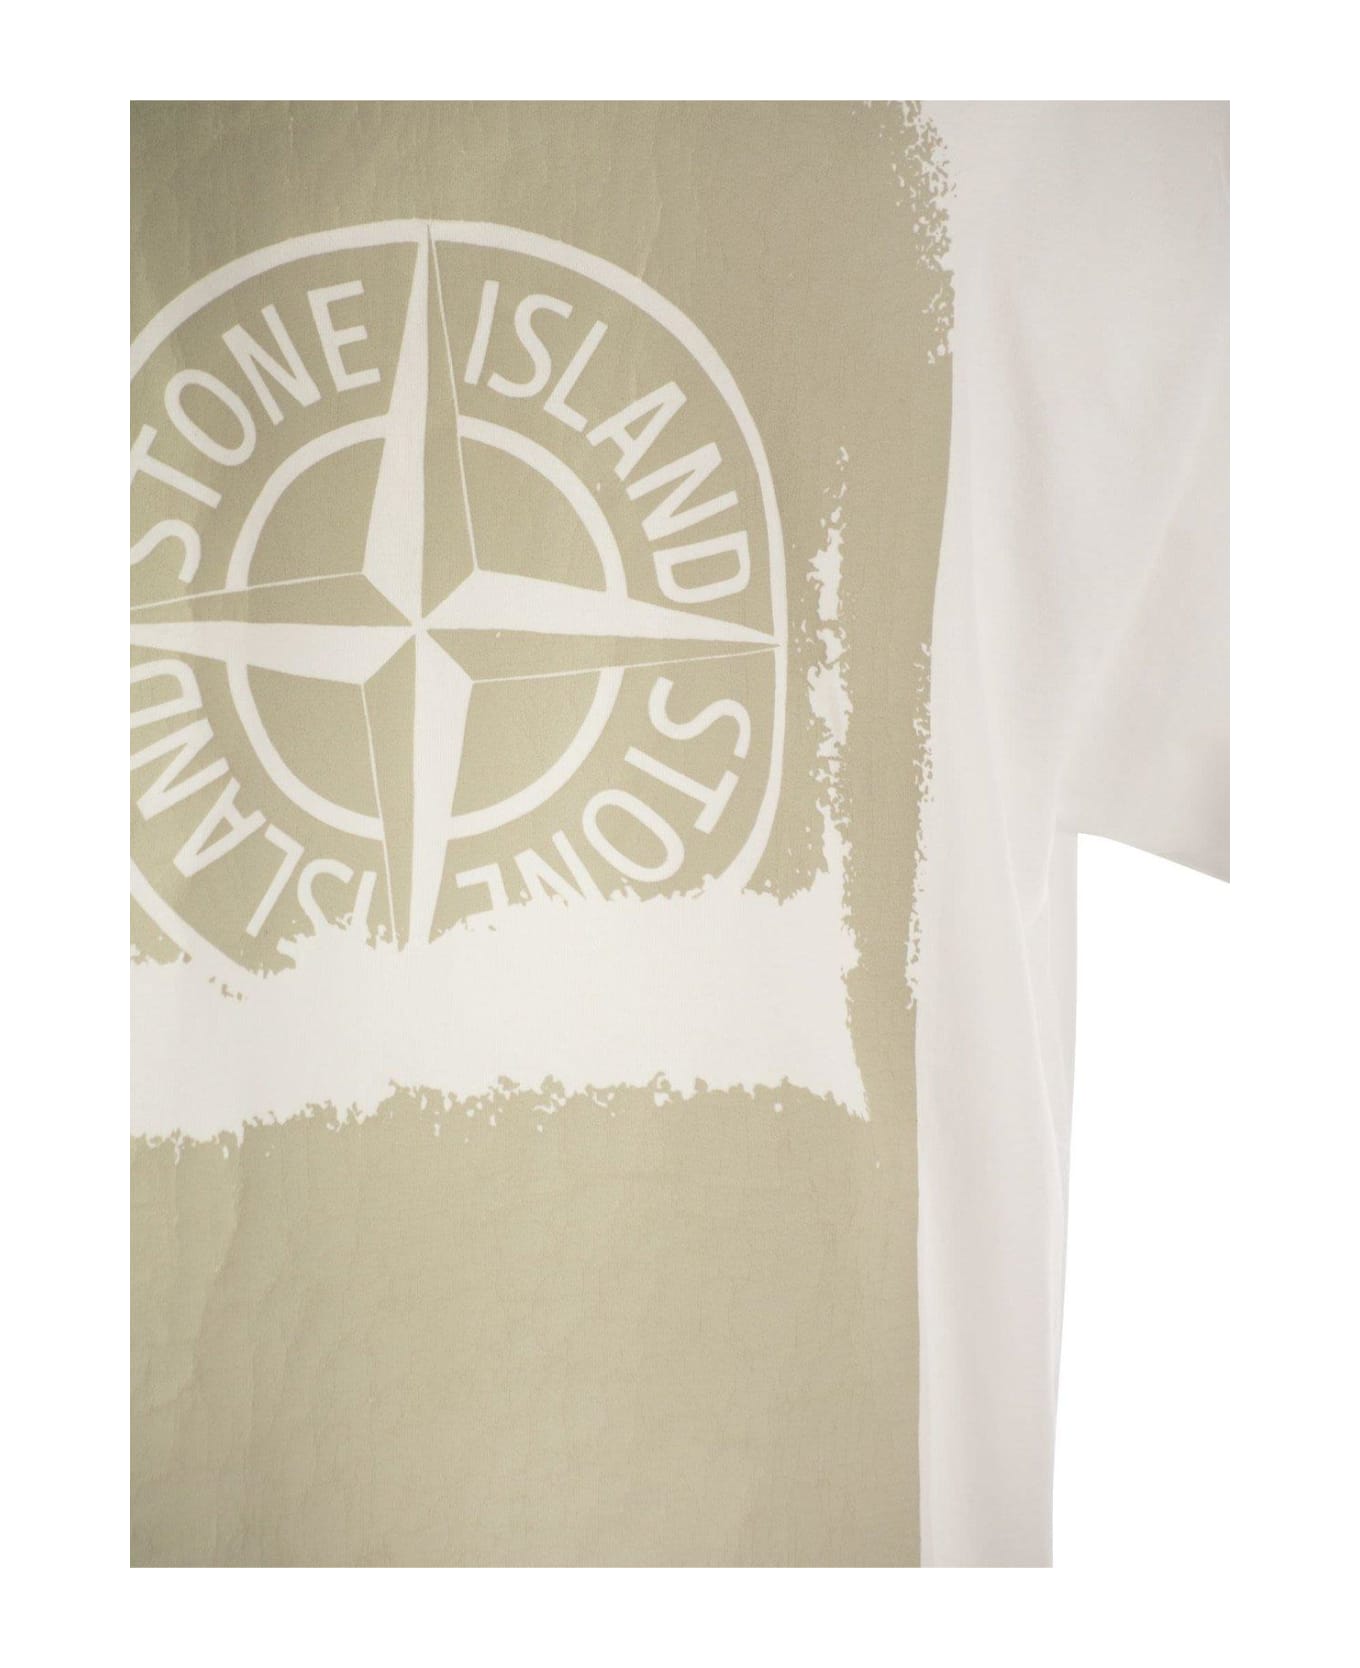 Stone Island Back Print T-shirt - White シャツ